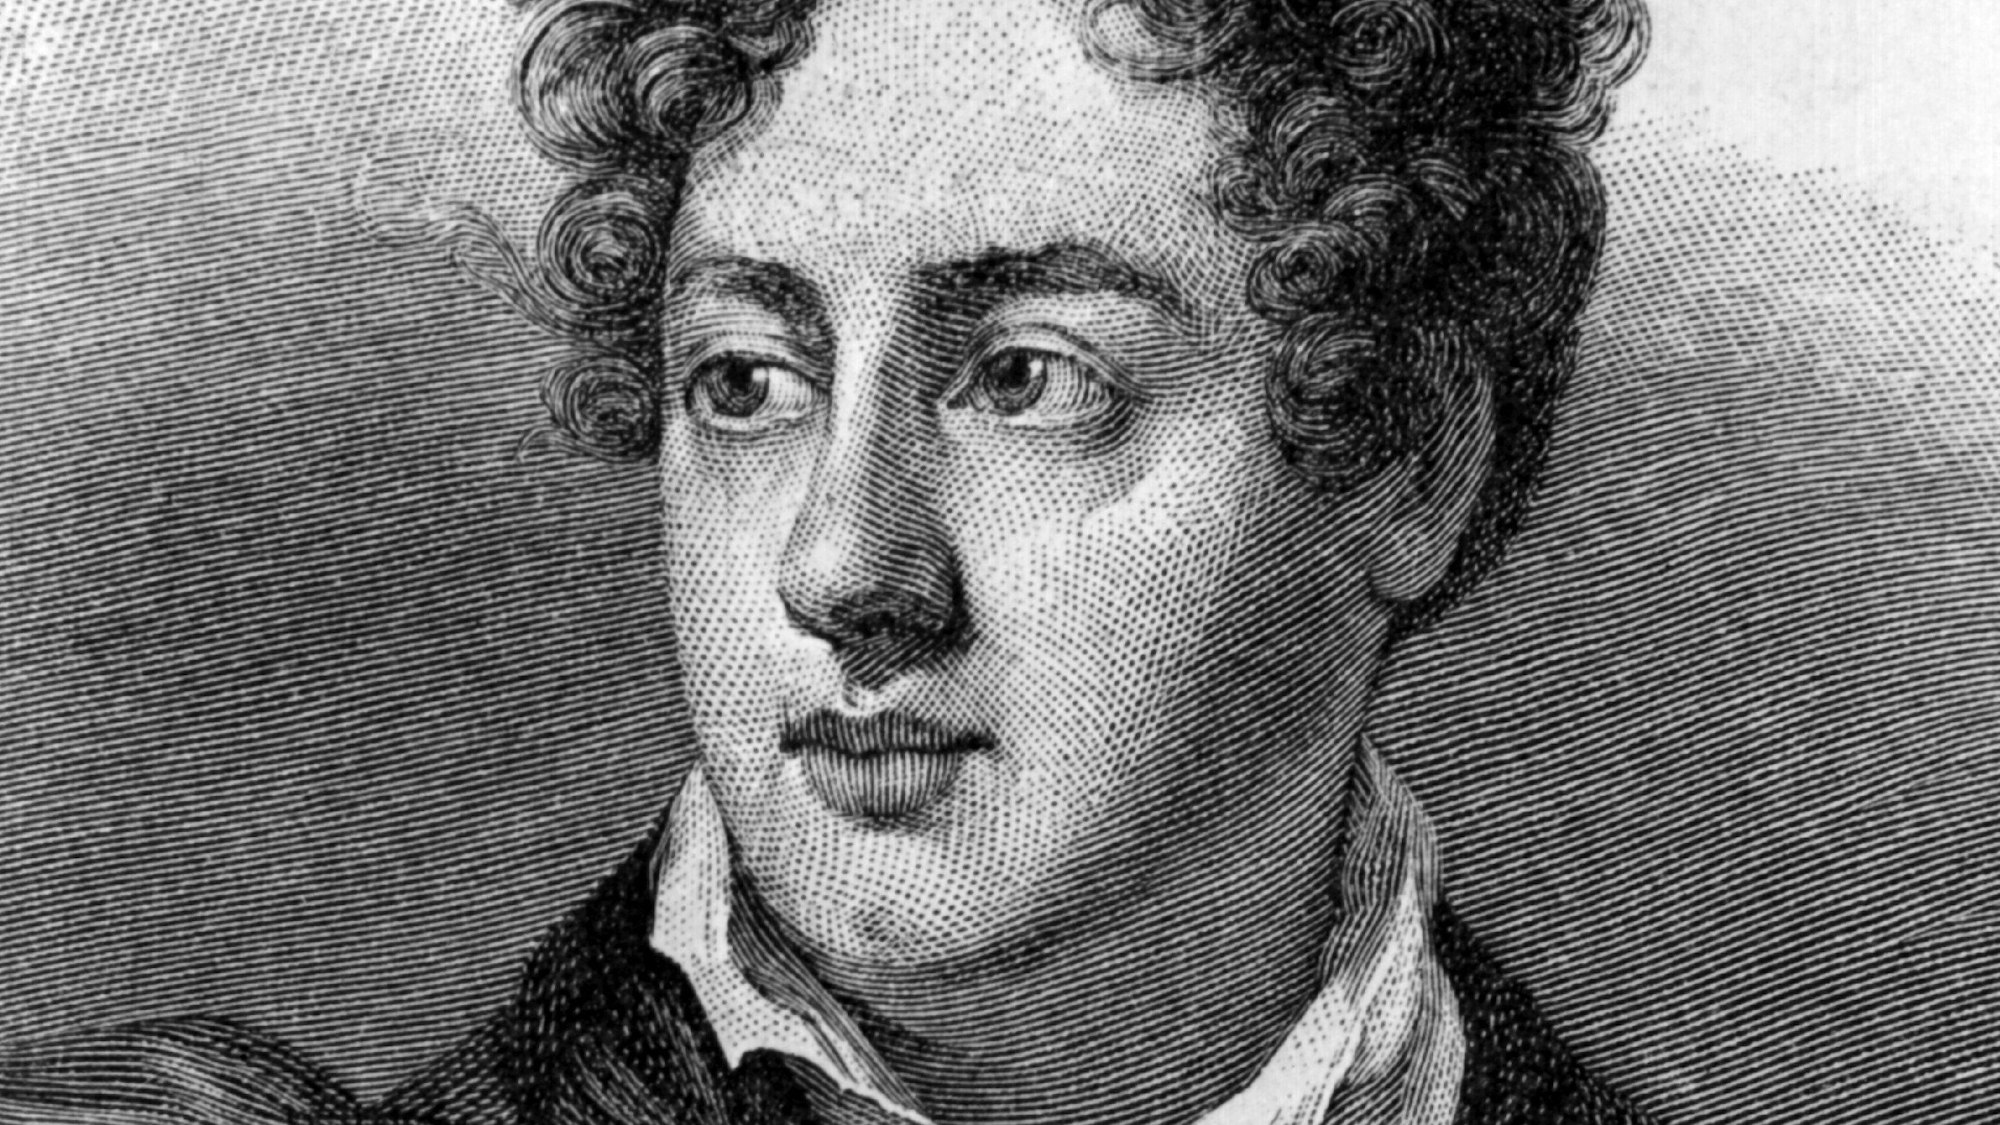 Die zeitgenössische Darstellung zeigt den englischen Dichter George Gordon Noel Lord Byron